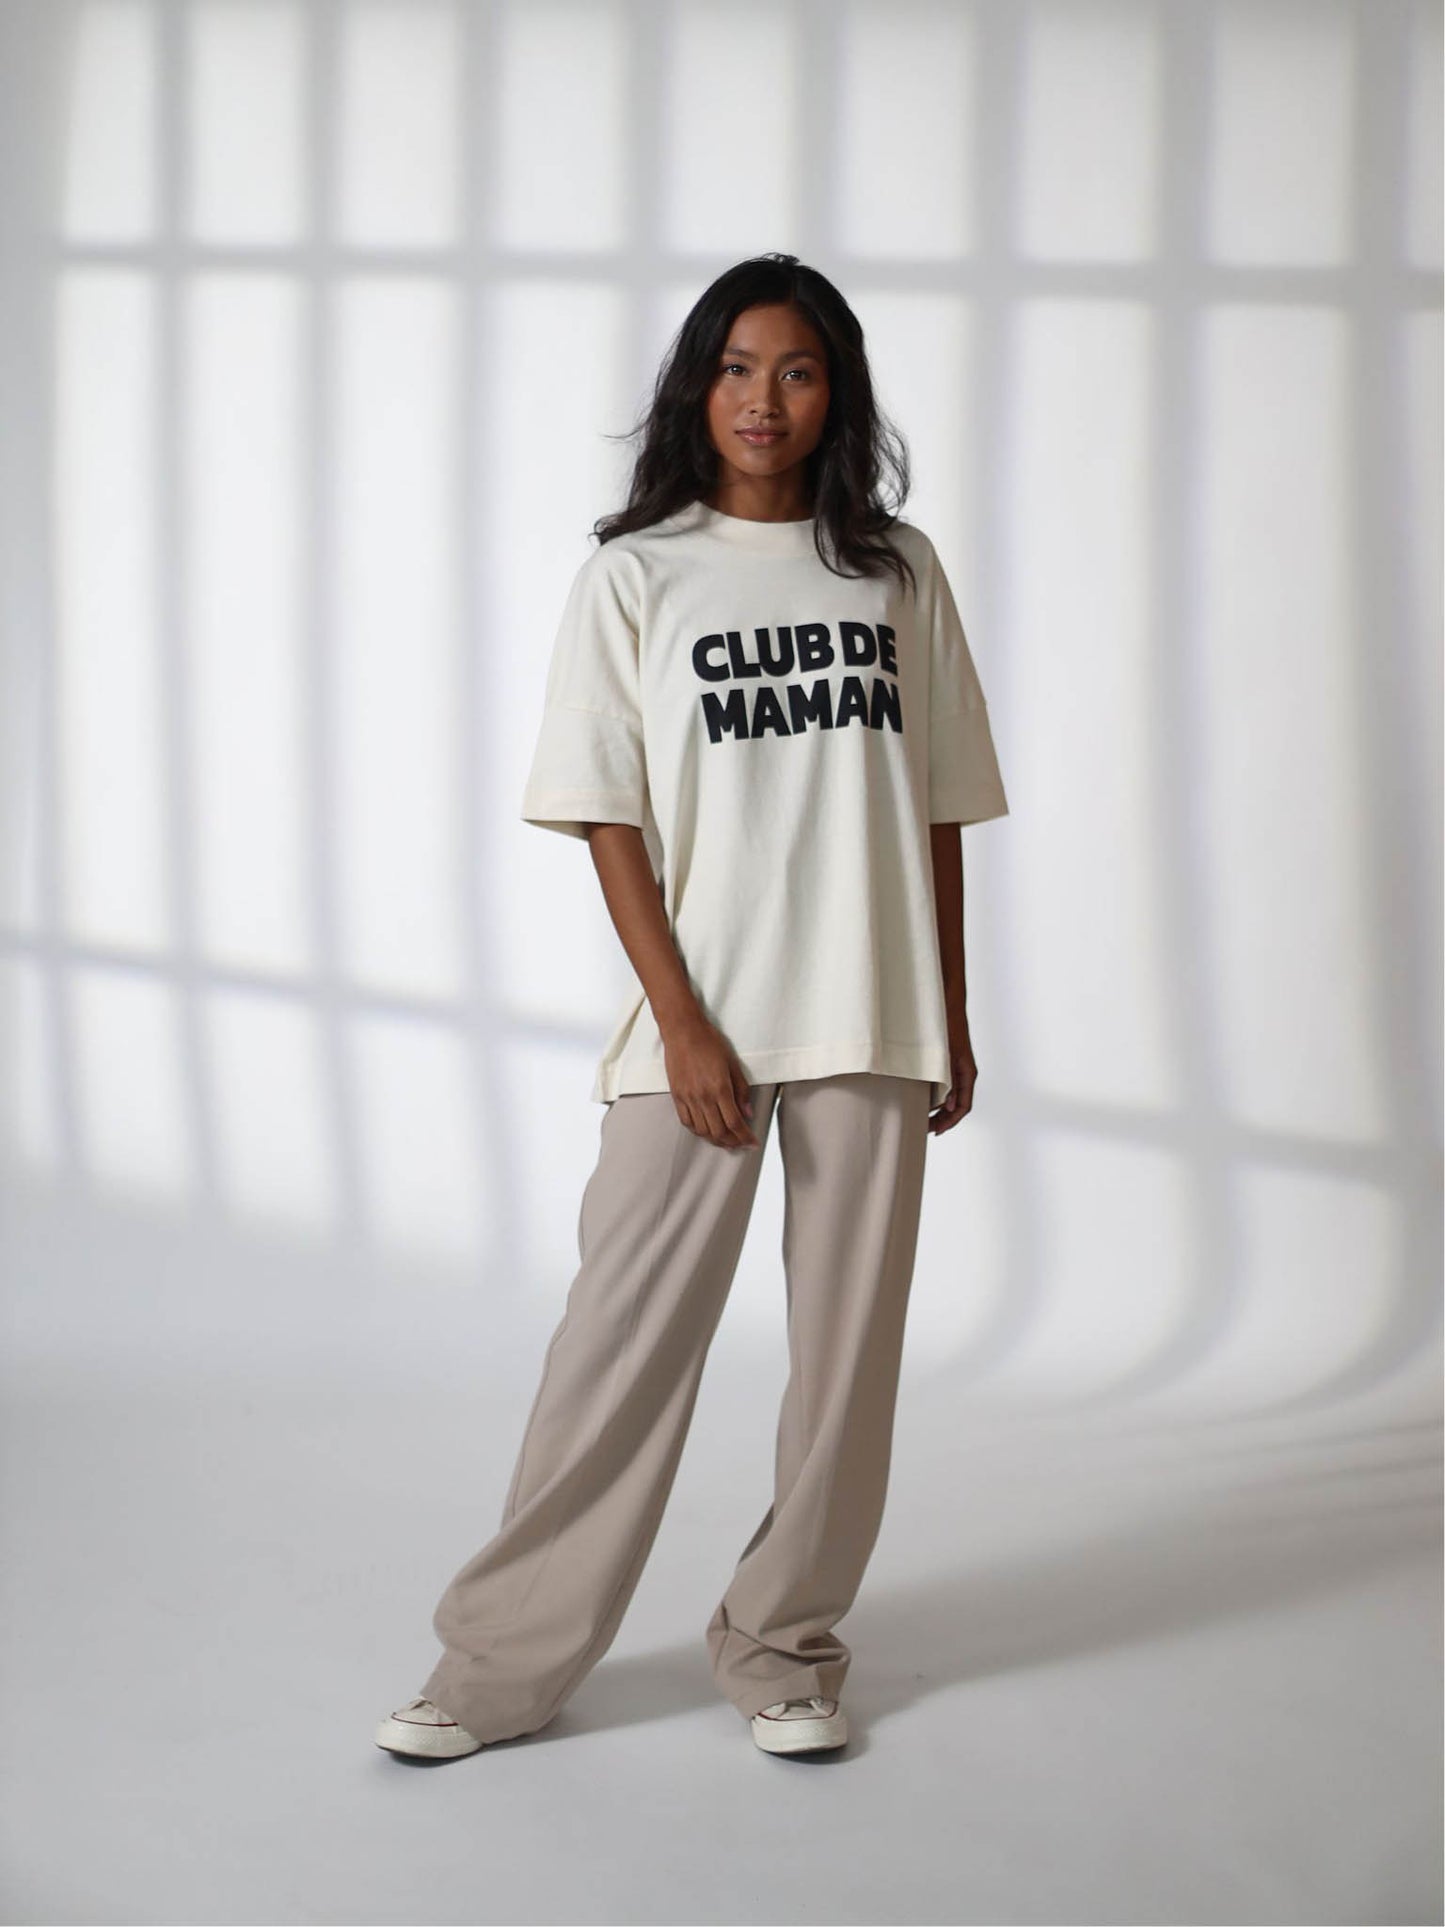 Famvibes - Damen T-Shirt "CLUB DE MAMAM" | beige / schwarz - Leja Concept Store